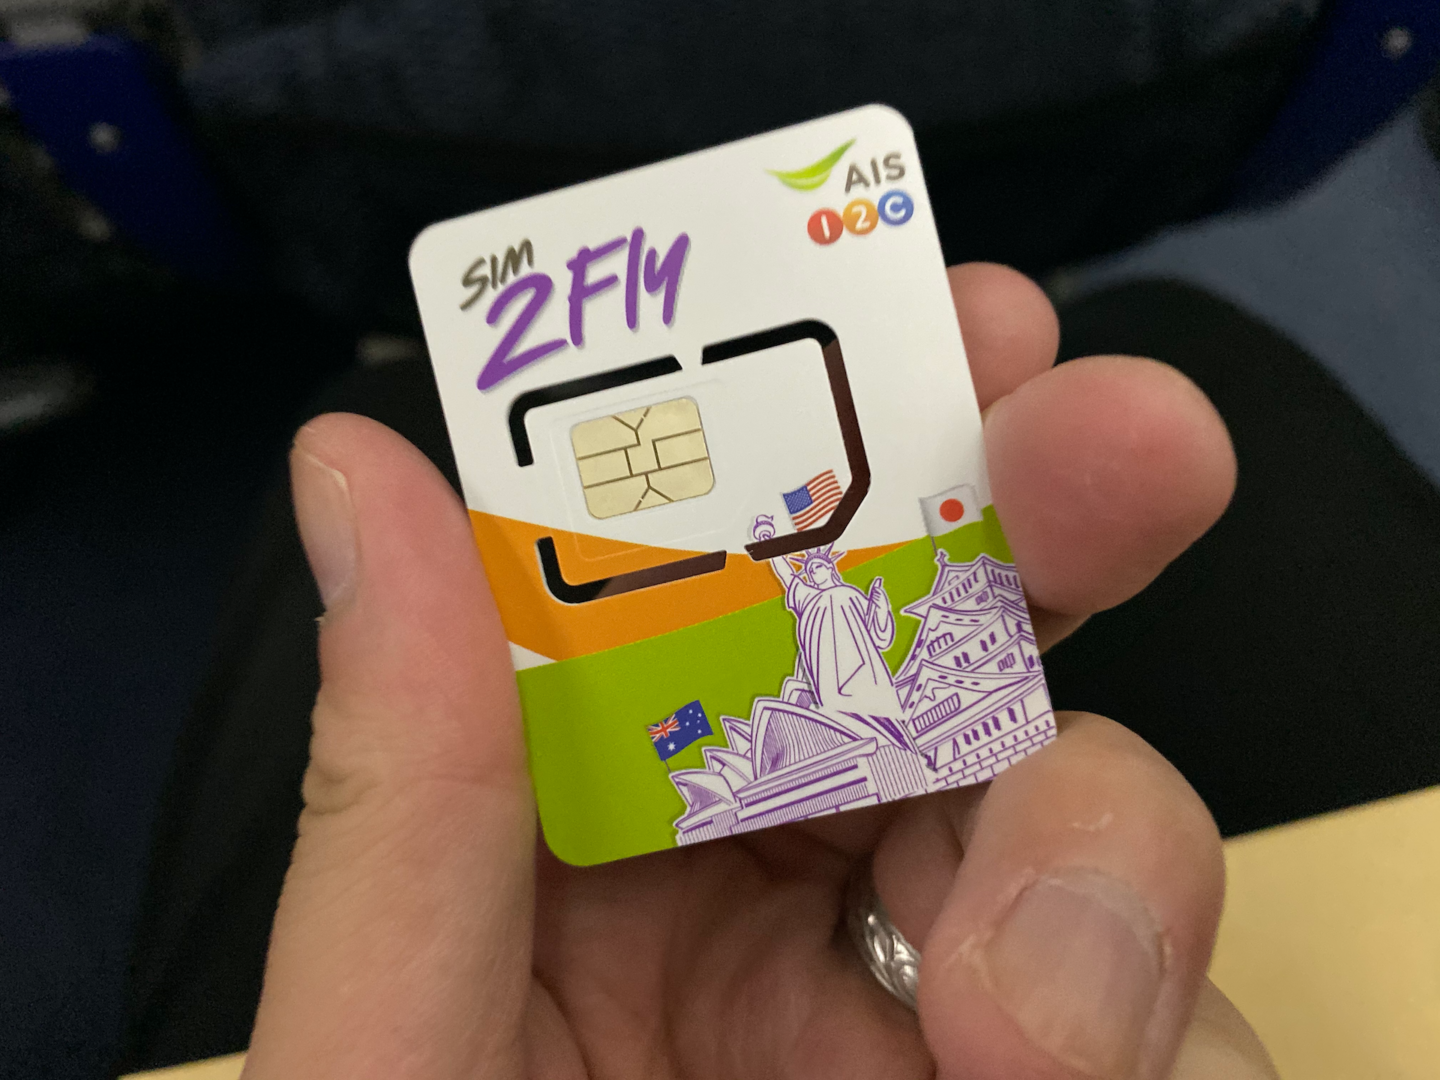 シンガポール旅行で使用するSIMカードをAmazonで購入してみた